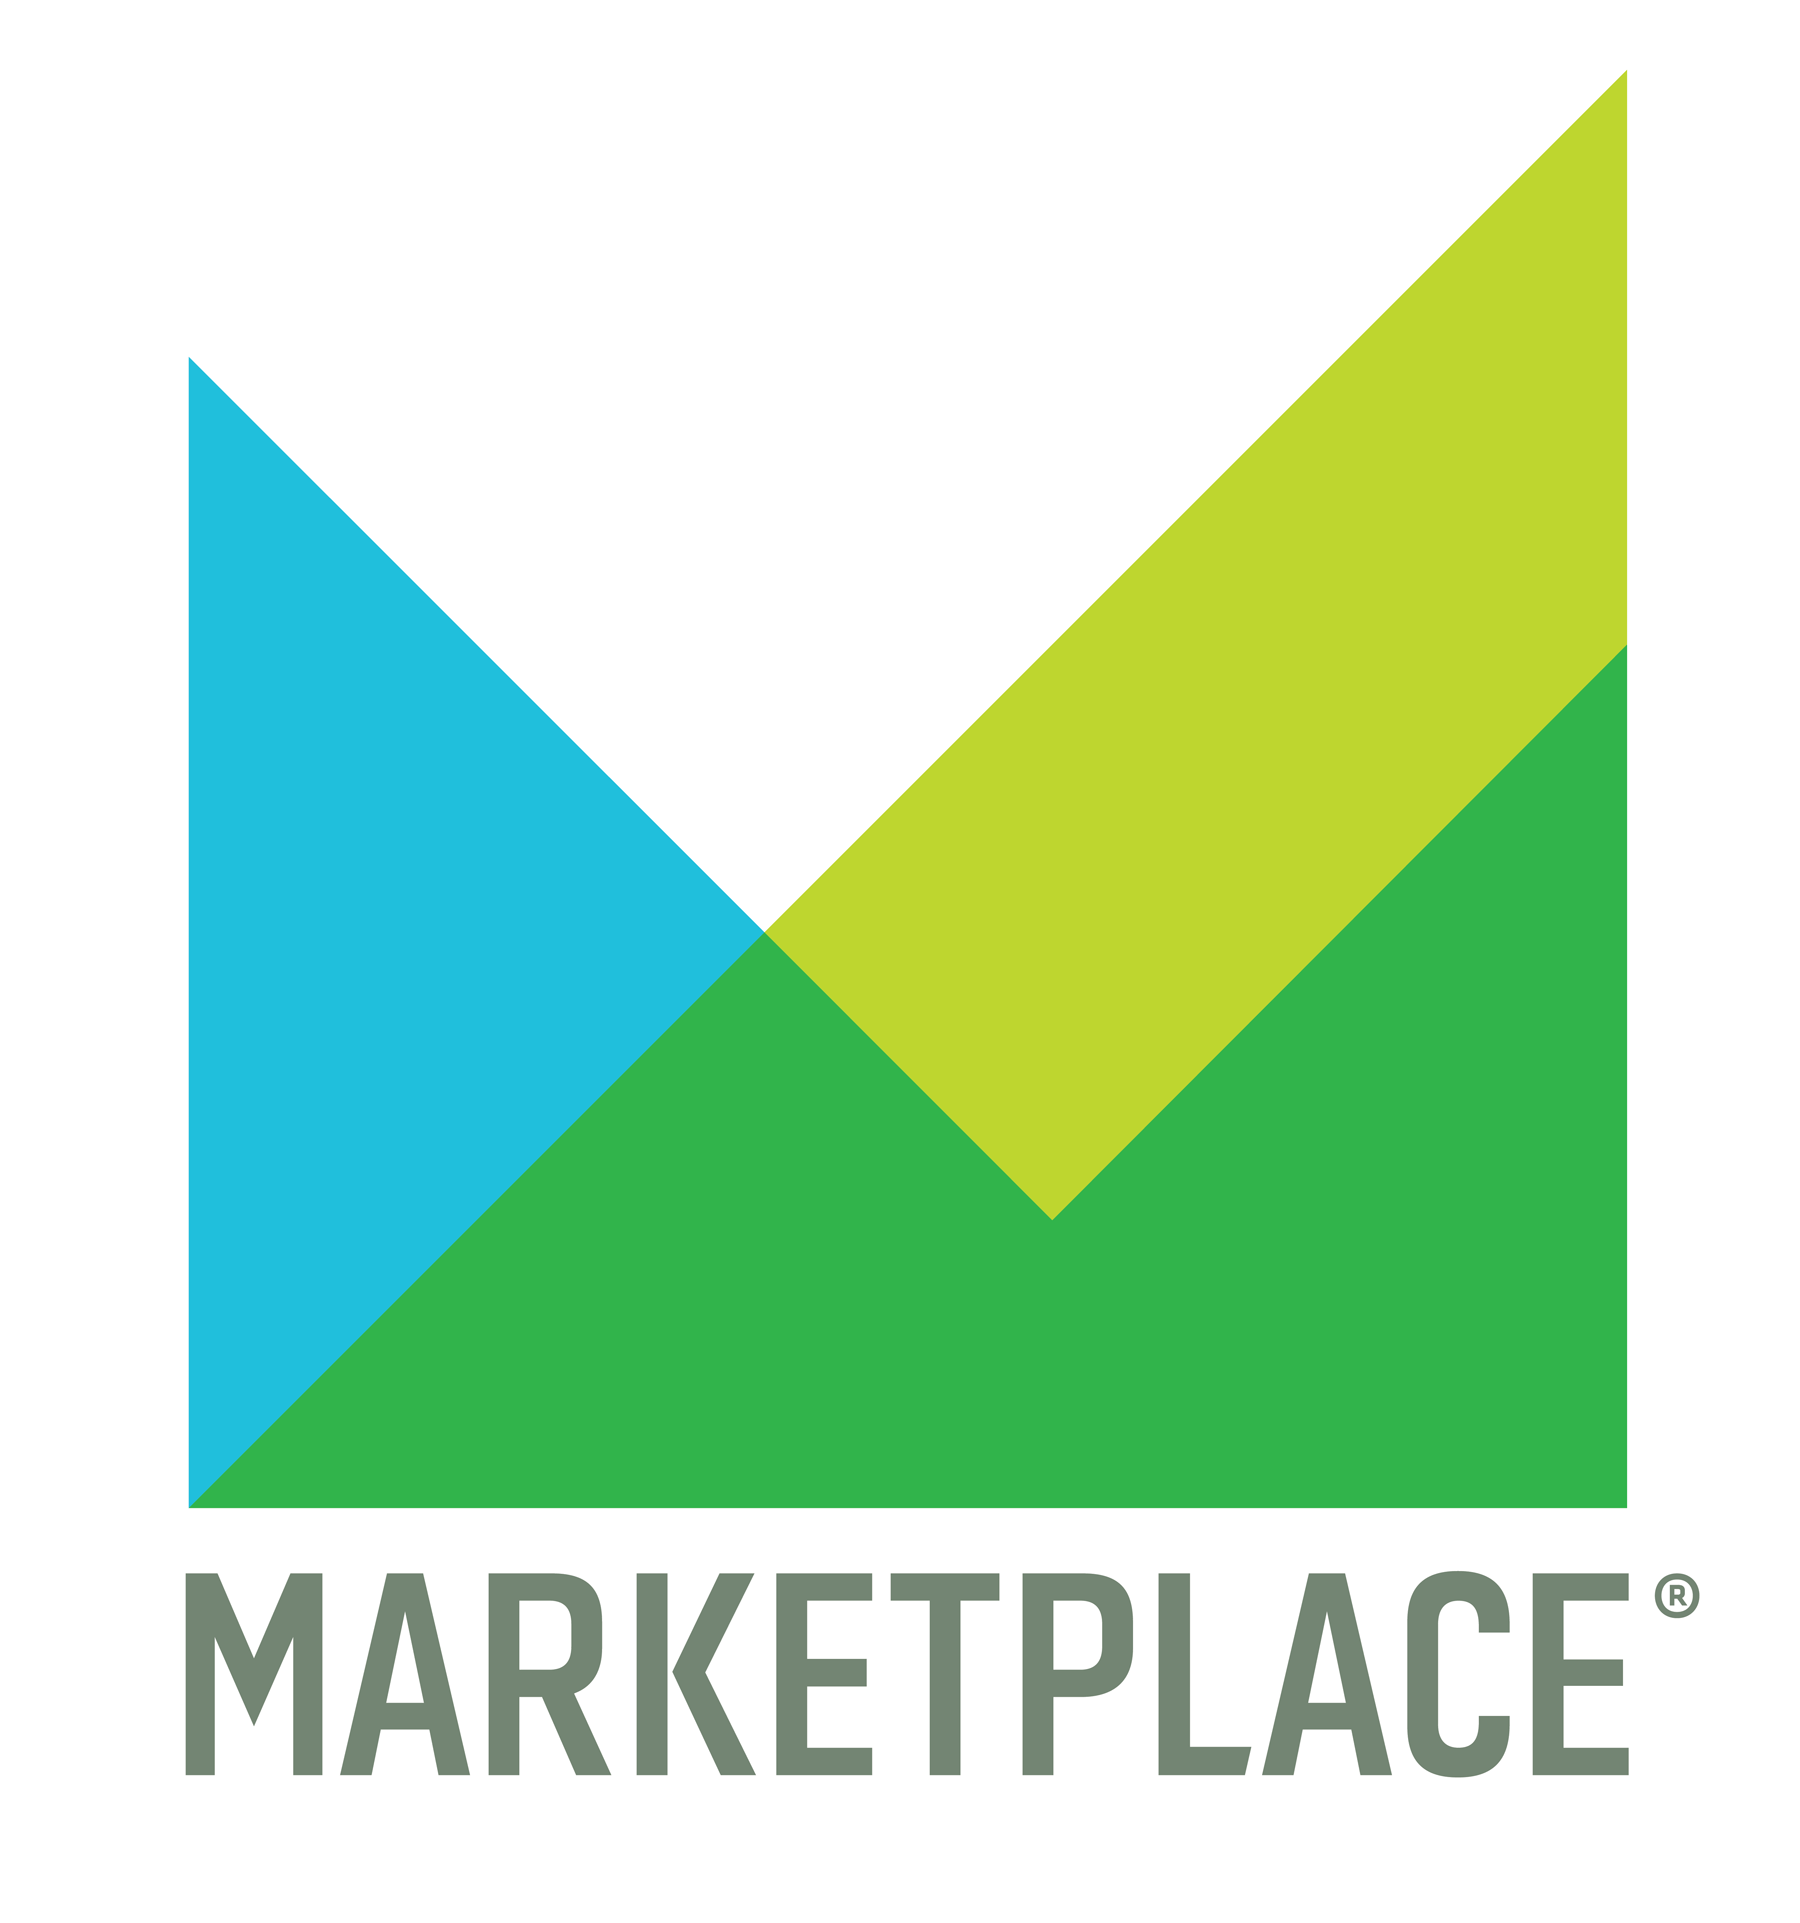 Marketplace Logo - Marketplace Logo Innovation Group